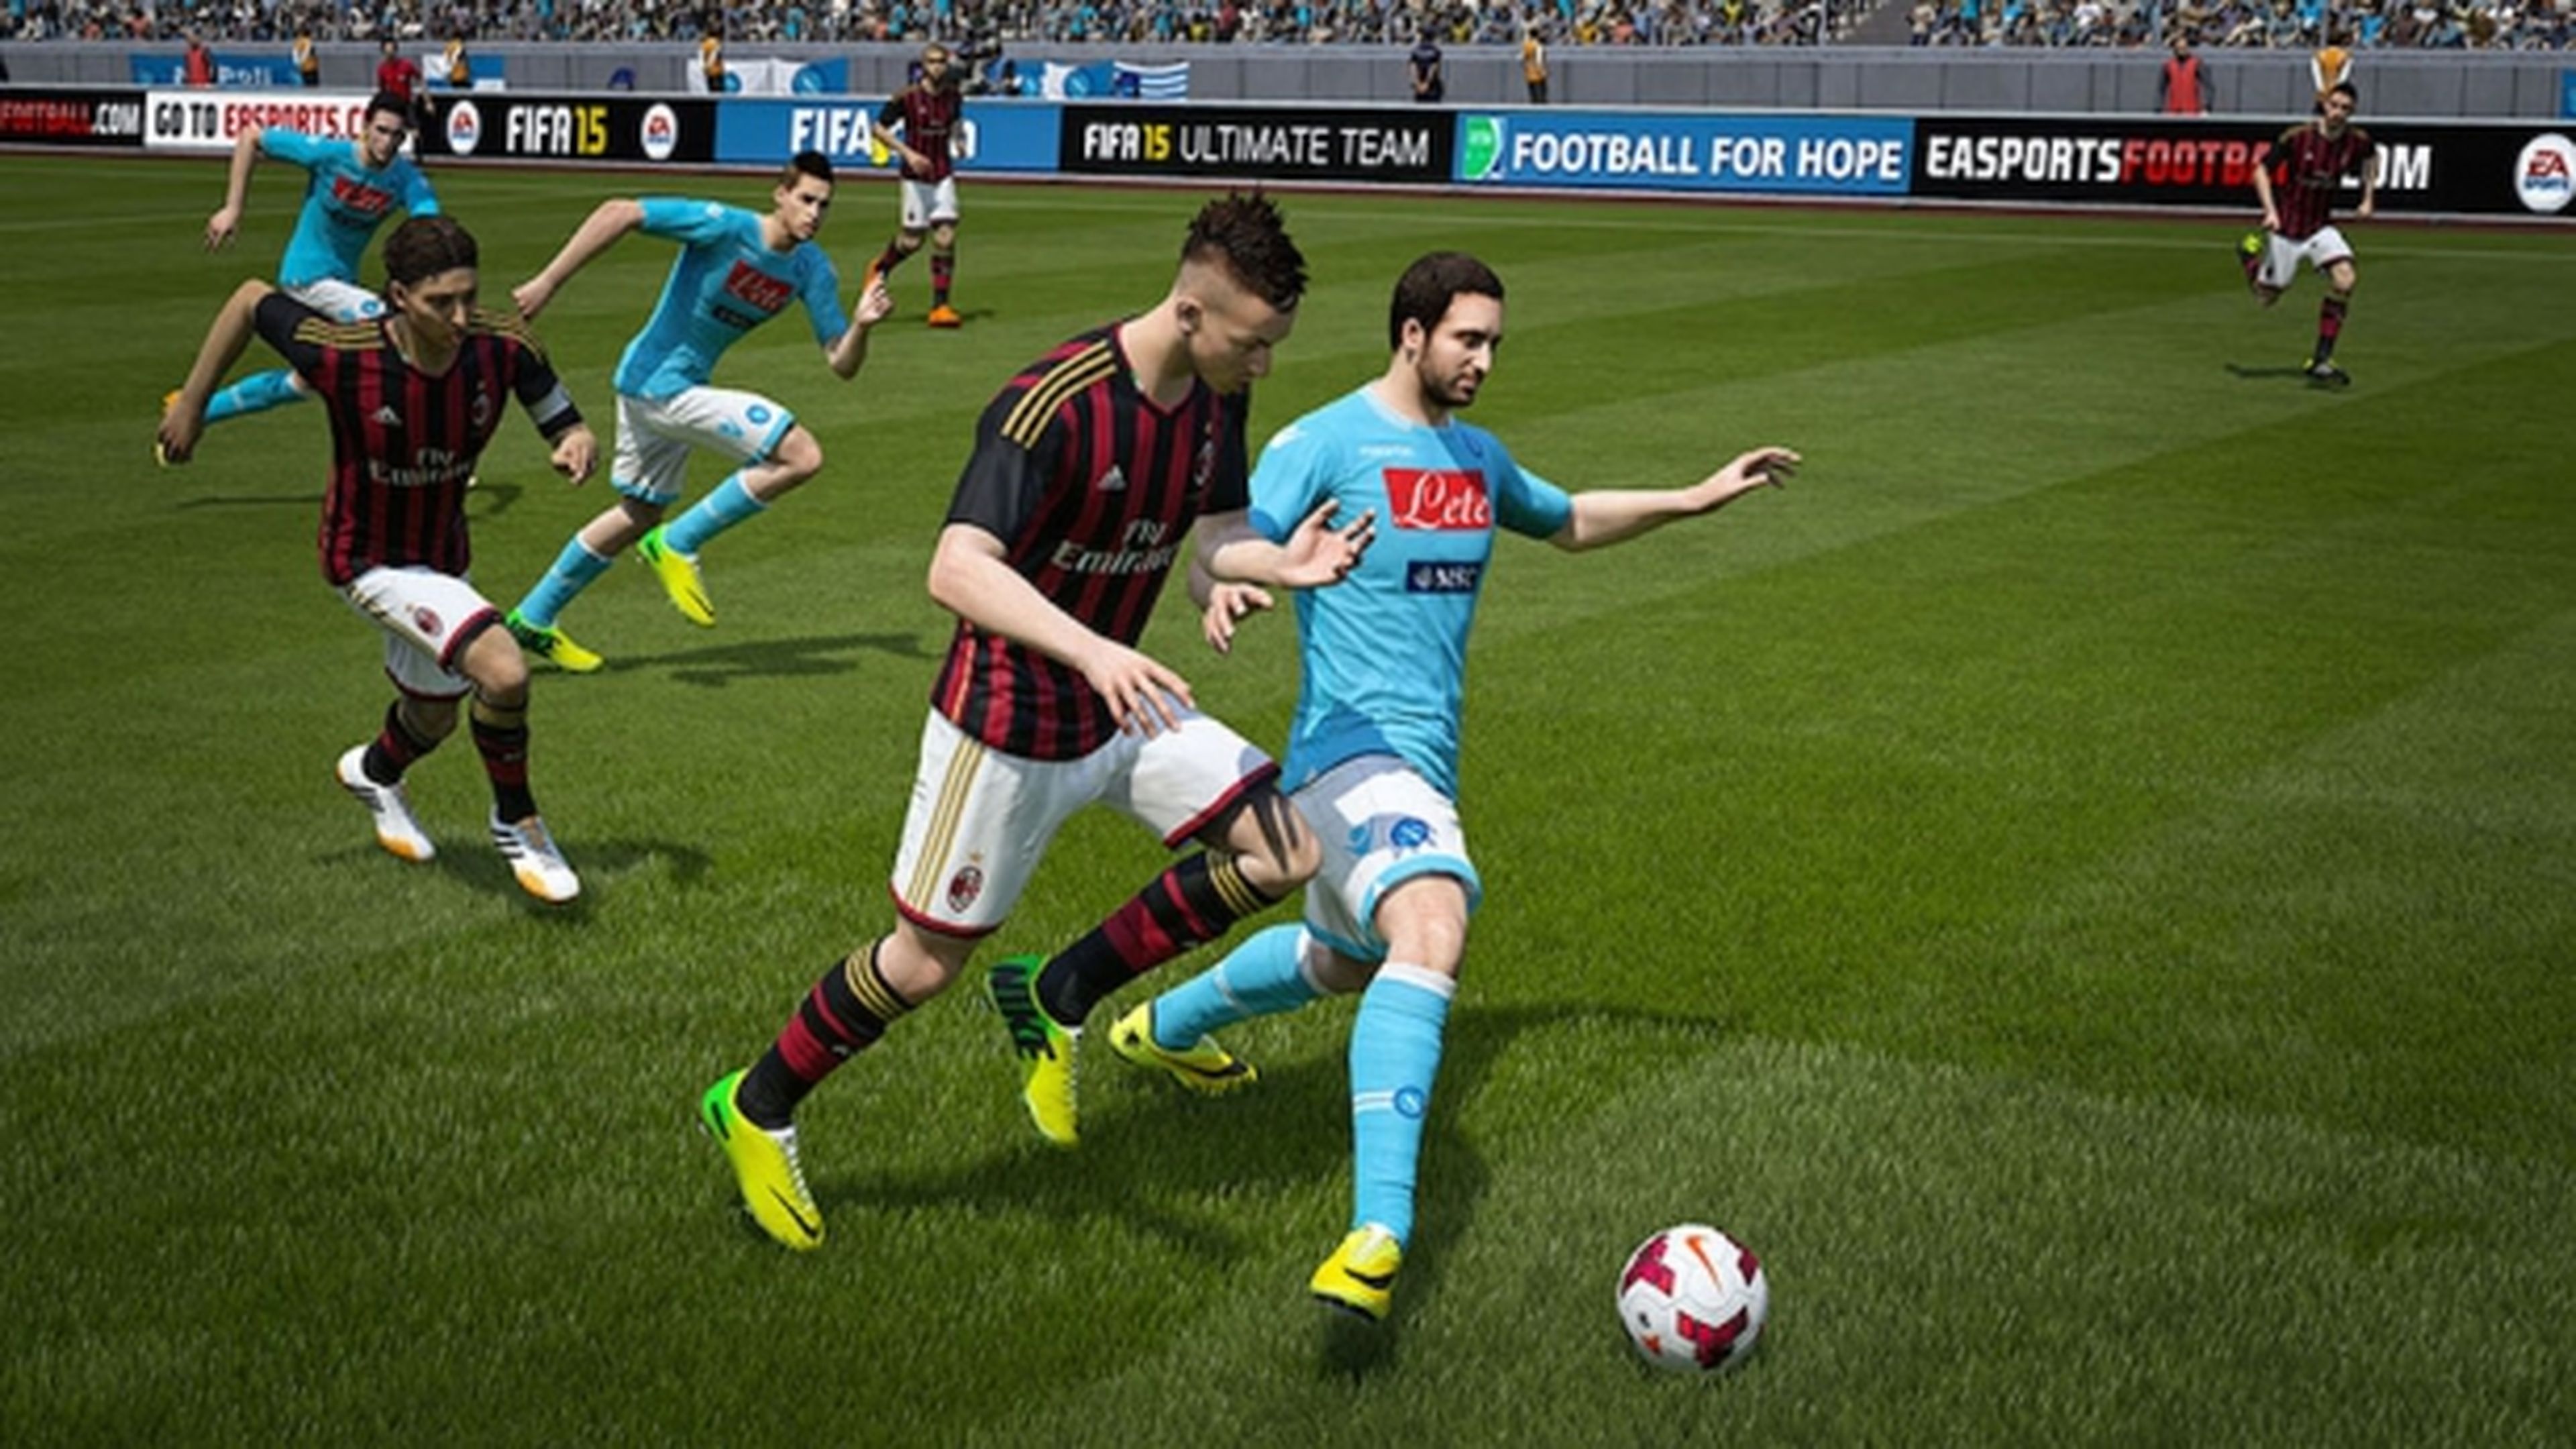 Requisitos mínimos y recomendados para FIFA 18 en DirectX 11 y